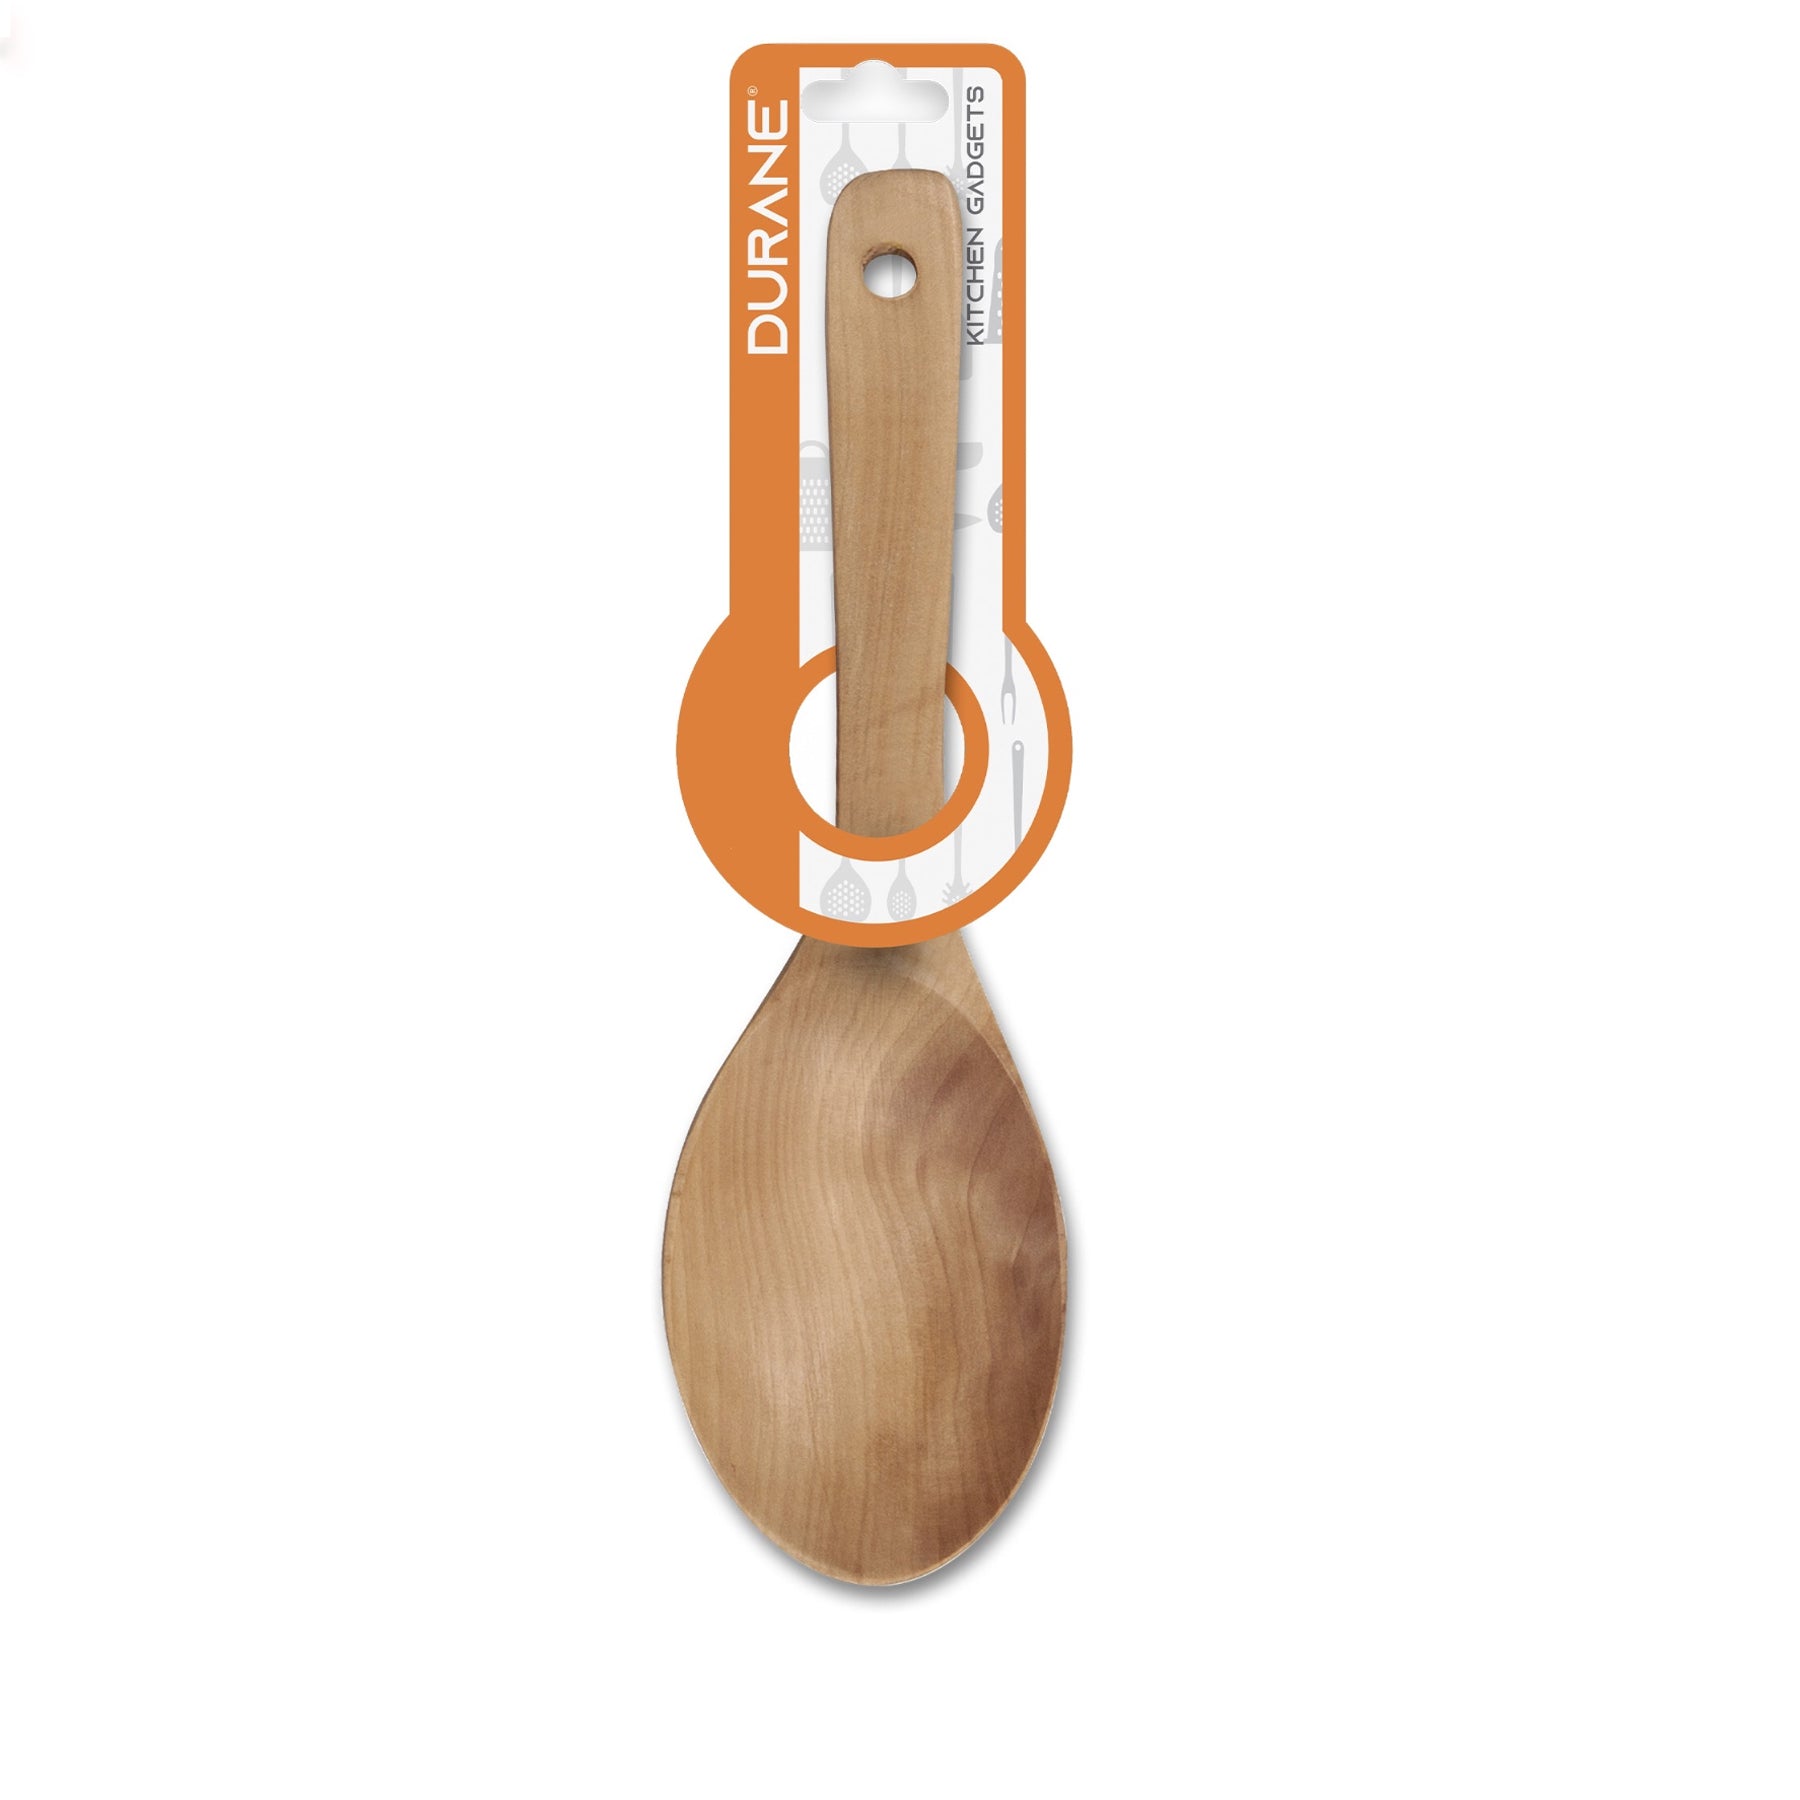 Durane Wooden Spoon - 10 inch